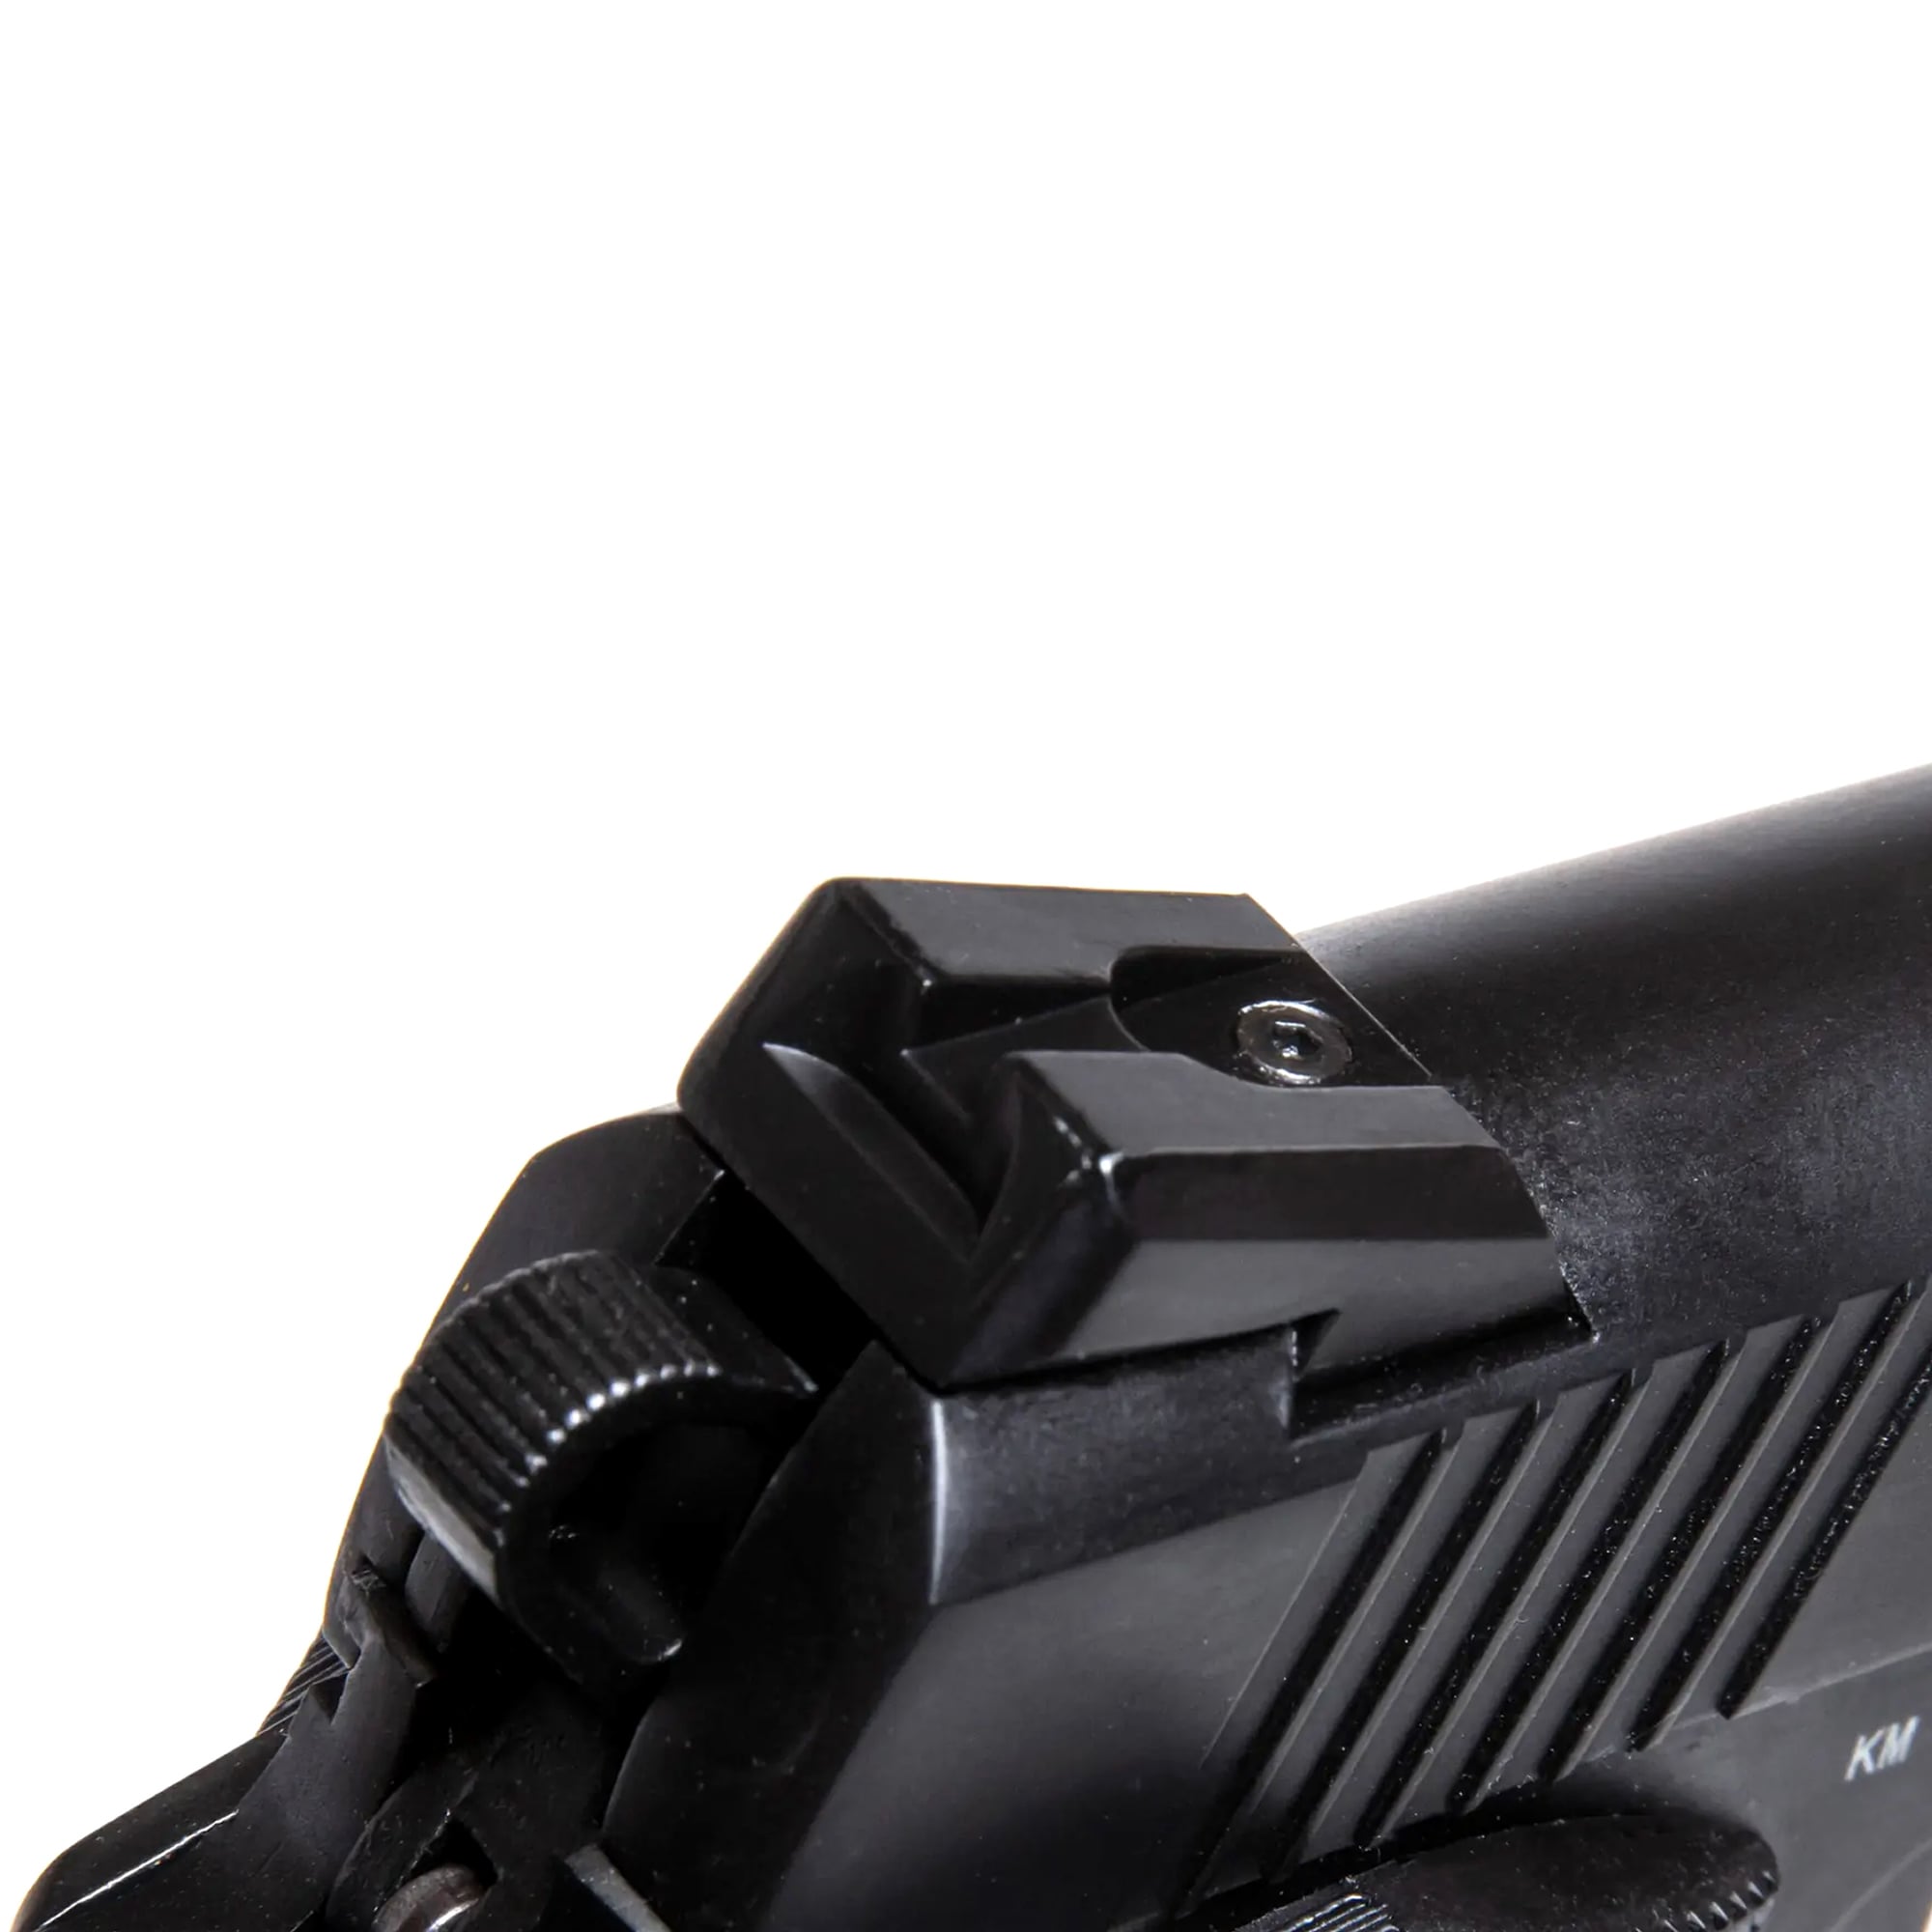 Pistolet ASG GBB Double Bell M1911 CQBP 739 CO2 - Black